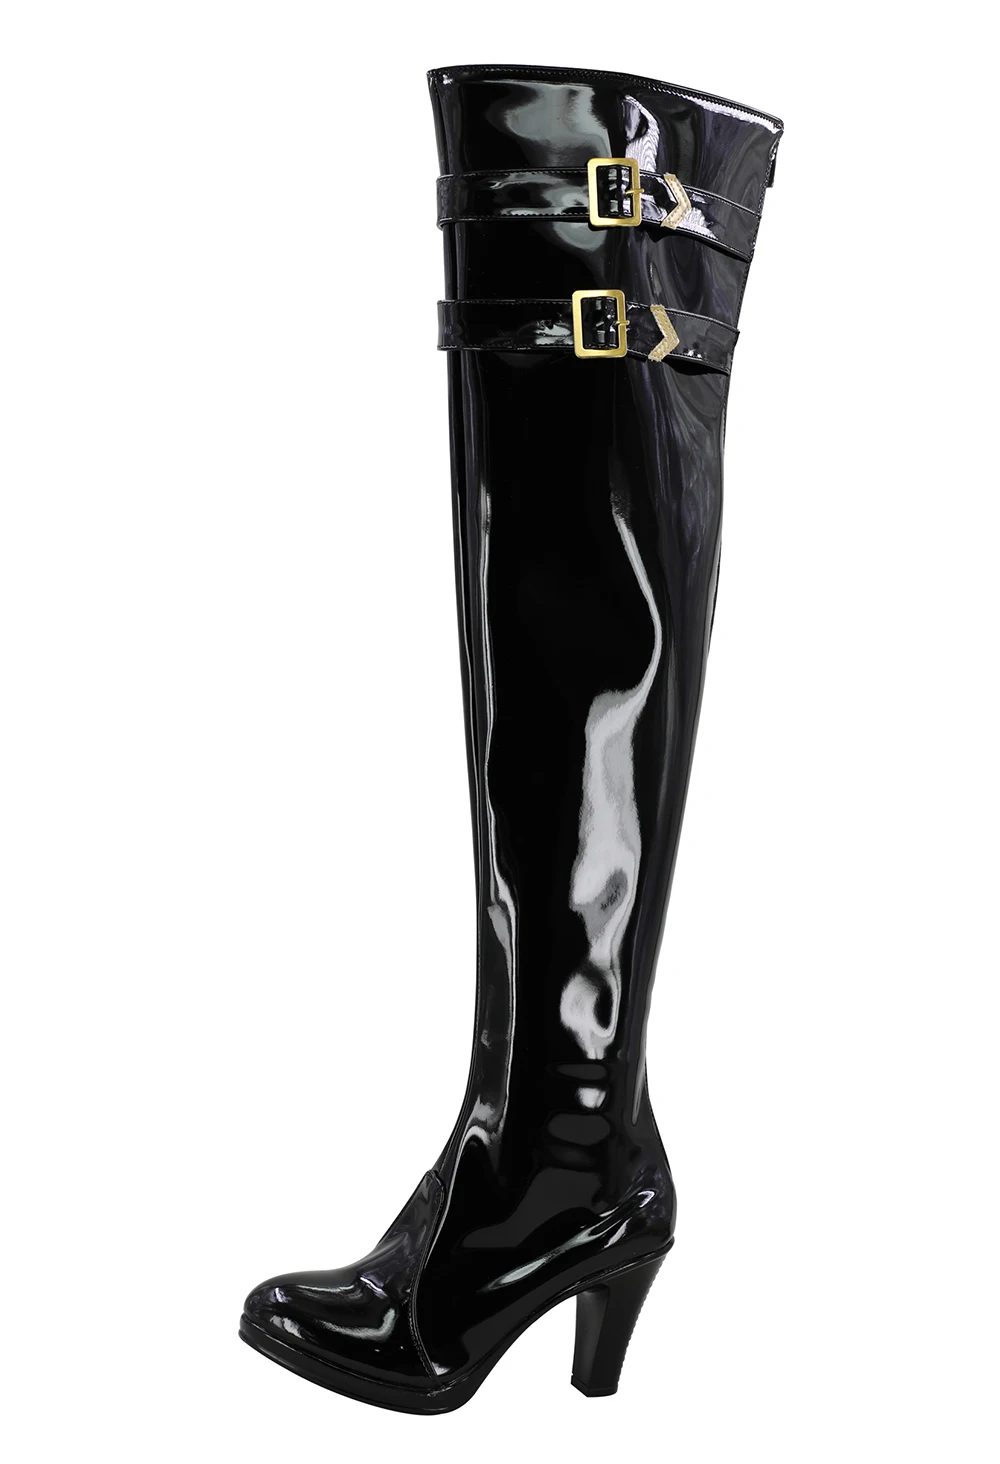 Love Live/ботинки для косплея Эли аясе; черные туфли на высоком каблуке; Индивидуальный заказ; вечерние ботинки унисекс для костюмированной вечеринки на Хэллоуин